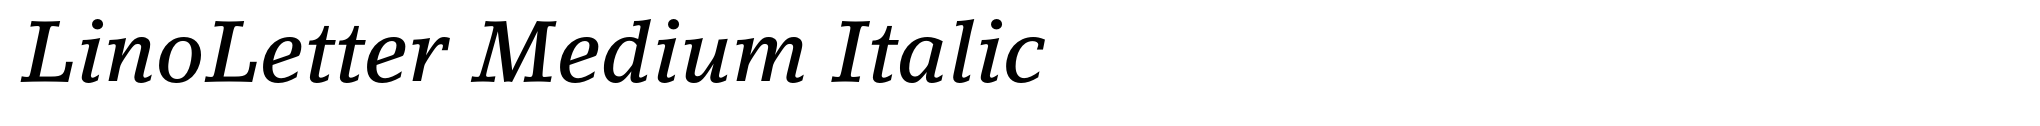 LinoLetter Medium Italic image